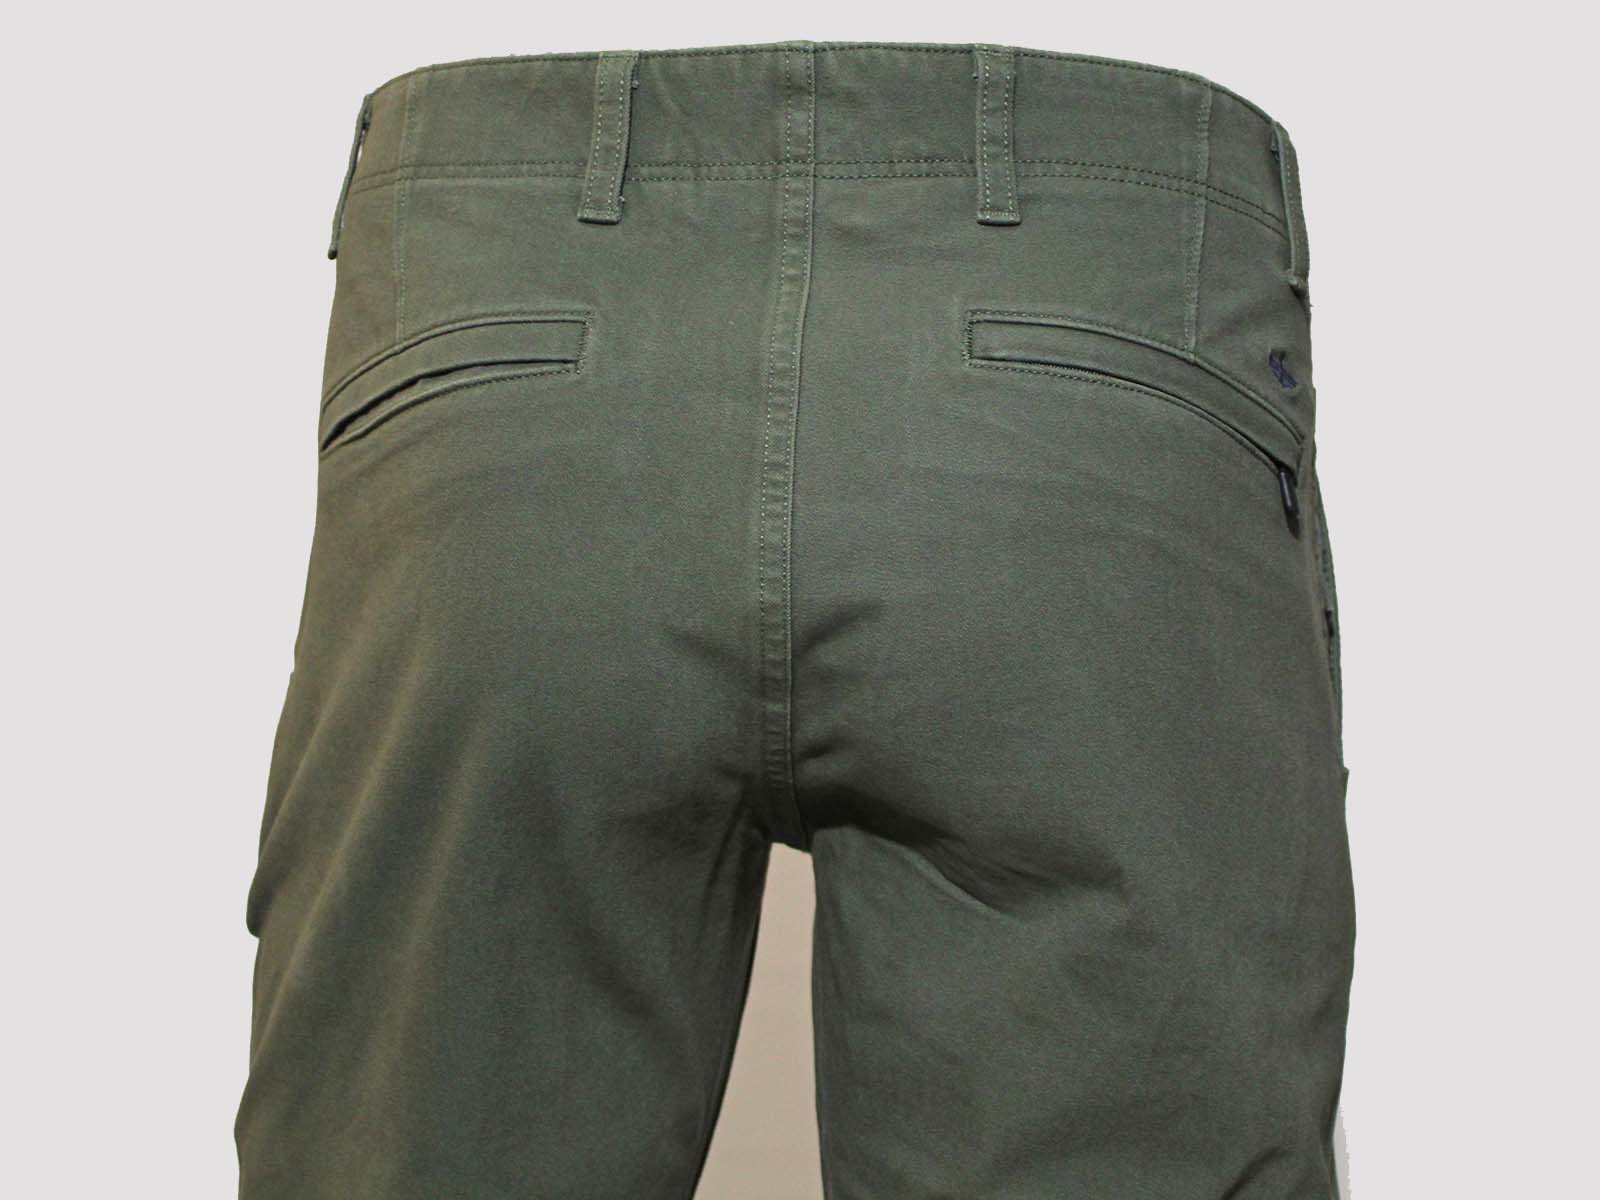 Pantalons d'home Dockers Alpha Khaki 360 slim (recte estret) 39900-0001 color verd caqui - 3 - La Casa Dels Pantalons